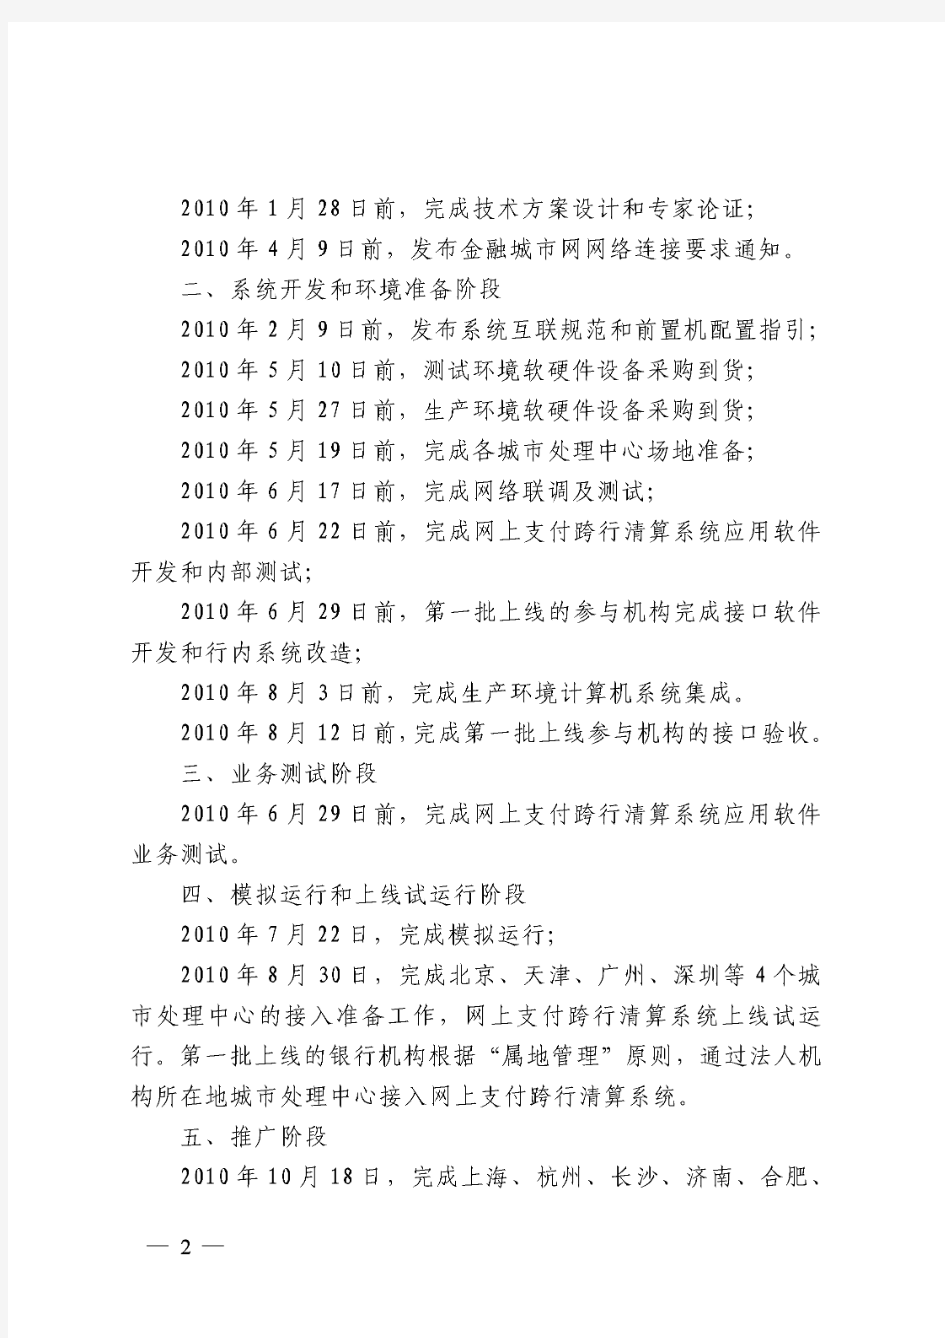 中国人民银行办公厅关于印发《网上支付跨行清算系统工程实施计划》的通知